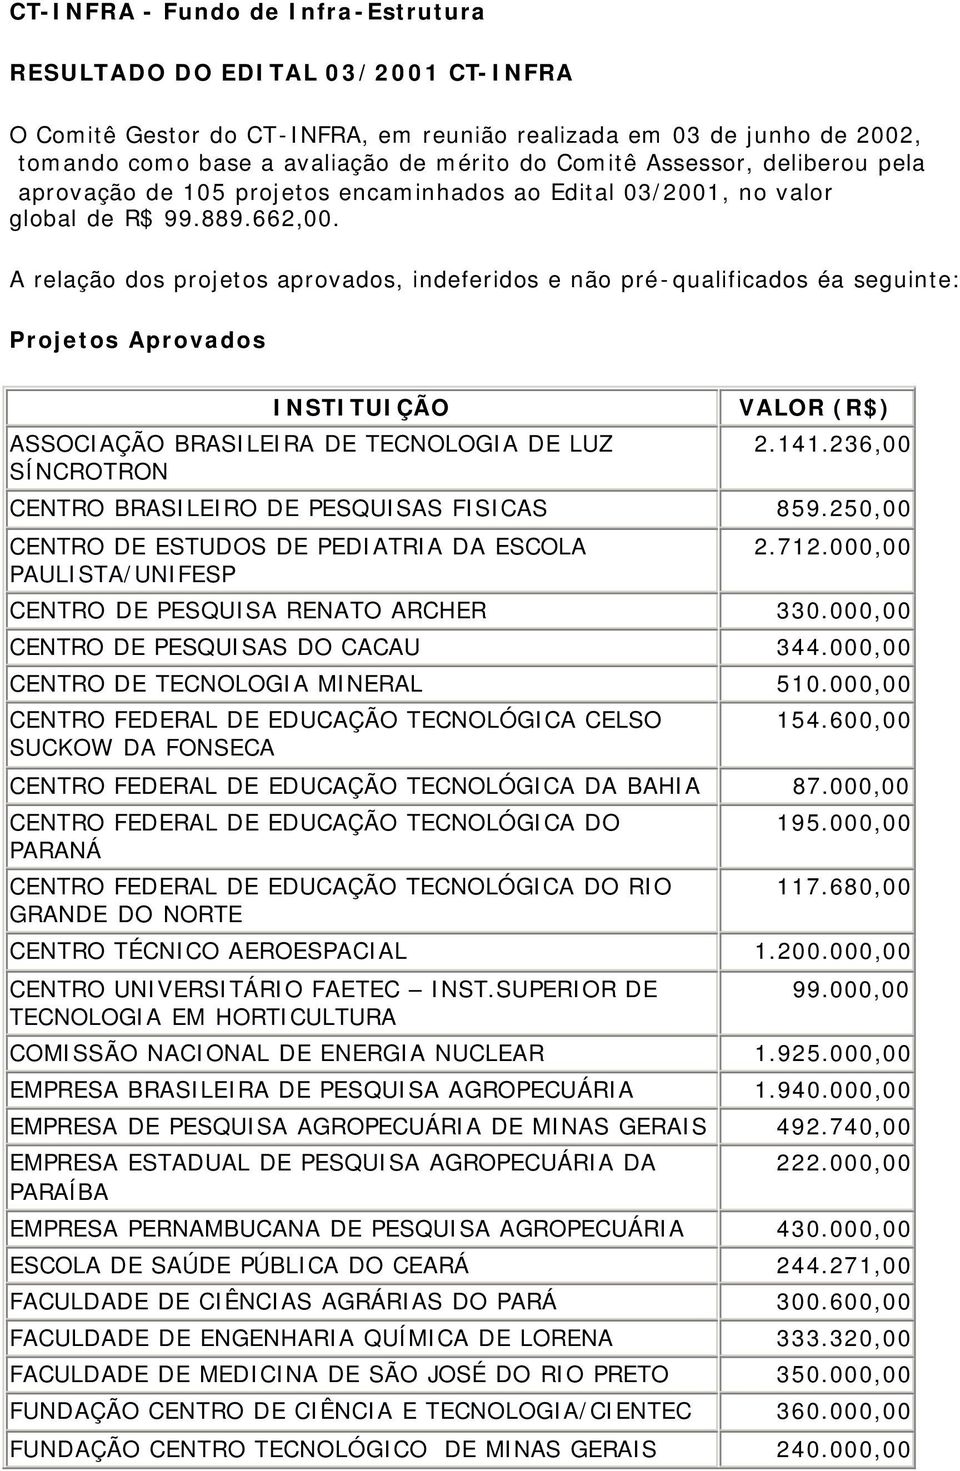 A relação dos projetos aprovados, indeferidos e não pré-qualificados éa seguinte: Projetos Aprovados ASSOCIAÇÃO BRASILEIRA DE TECNOLOGIA DE LUZ SÍNCROTRON VALOR (R$) 2.141.